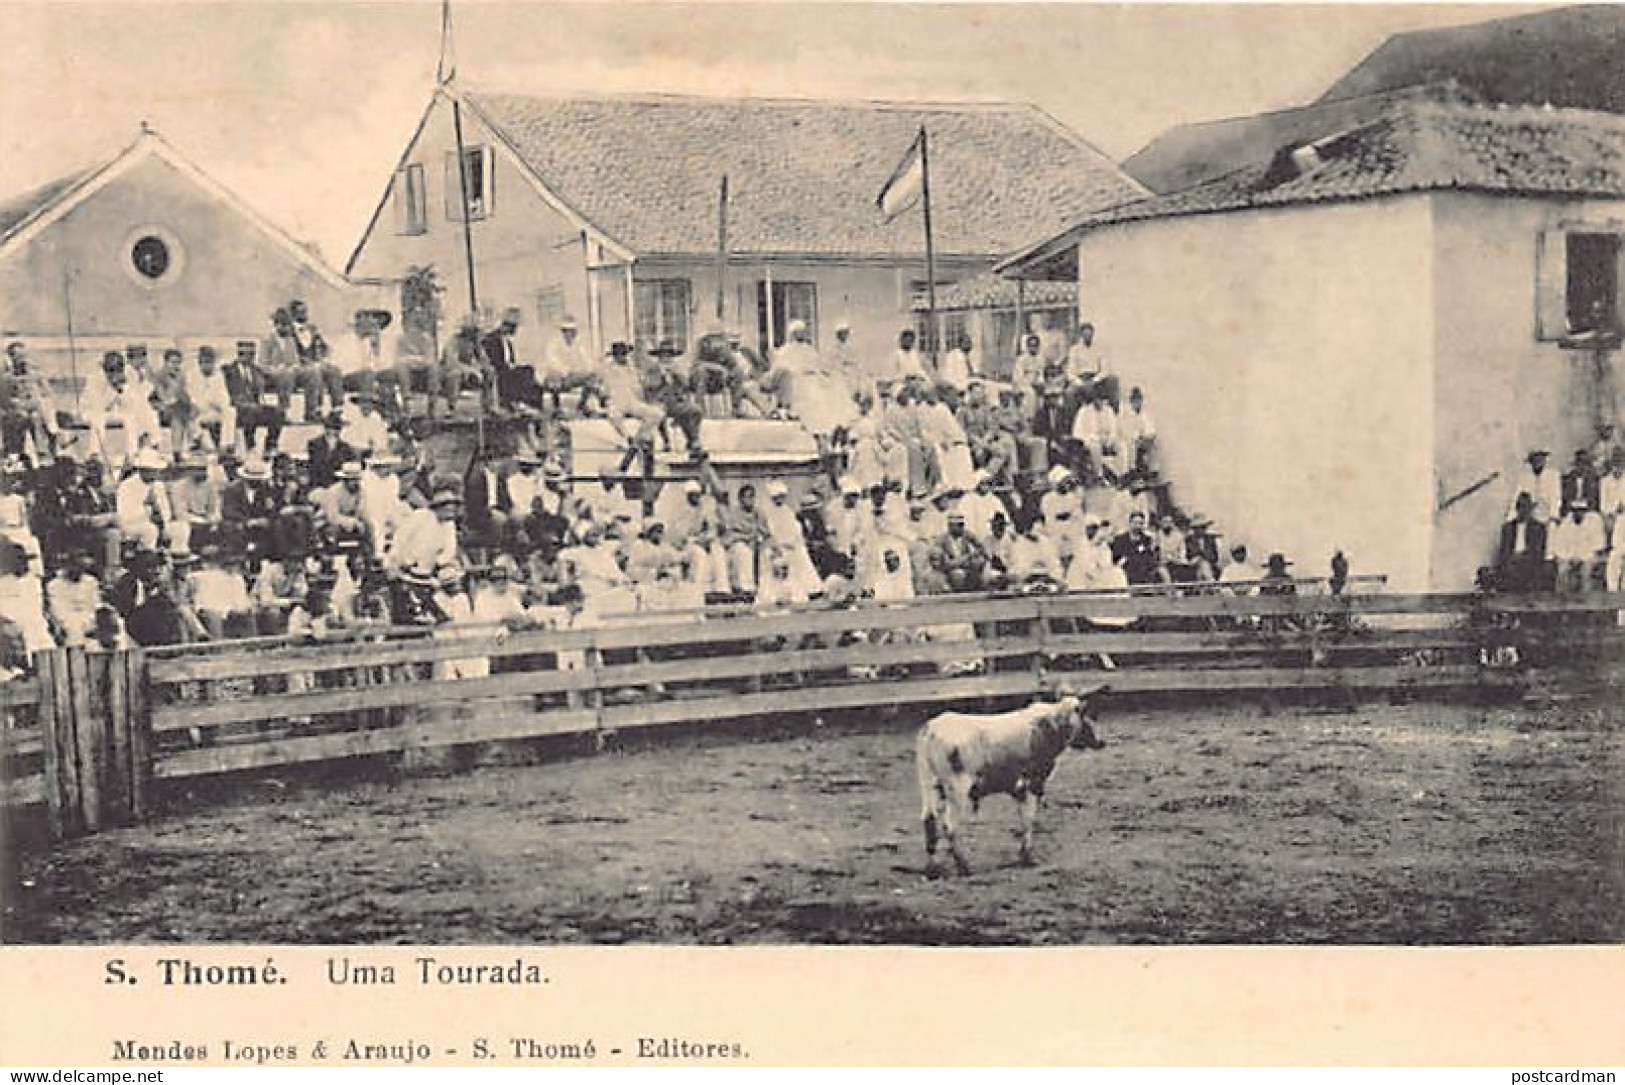 SAO TOME - Uma Tourada - Bullfight - Publ. Mendes. - Santo Tomé Y Príncipe